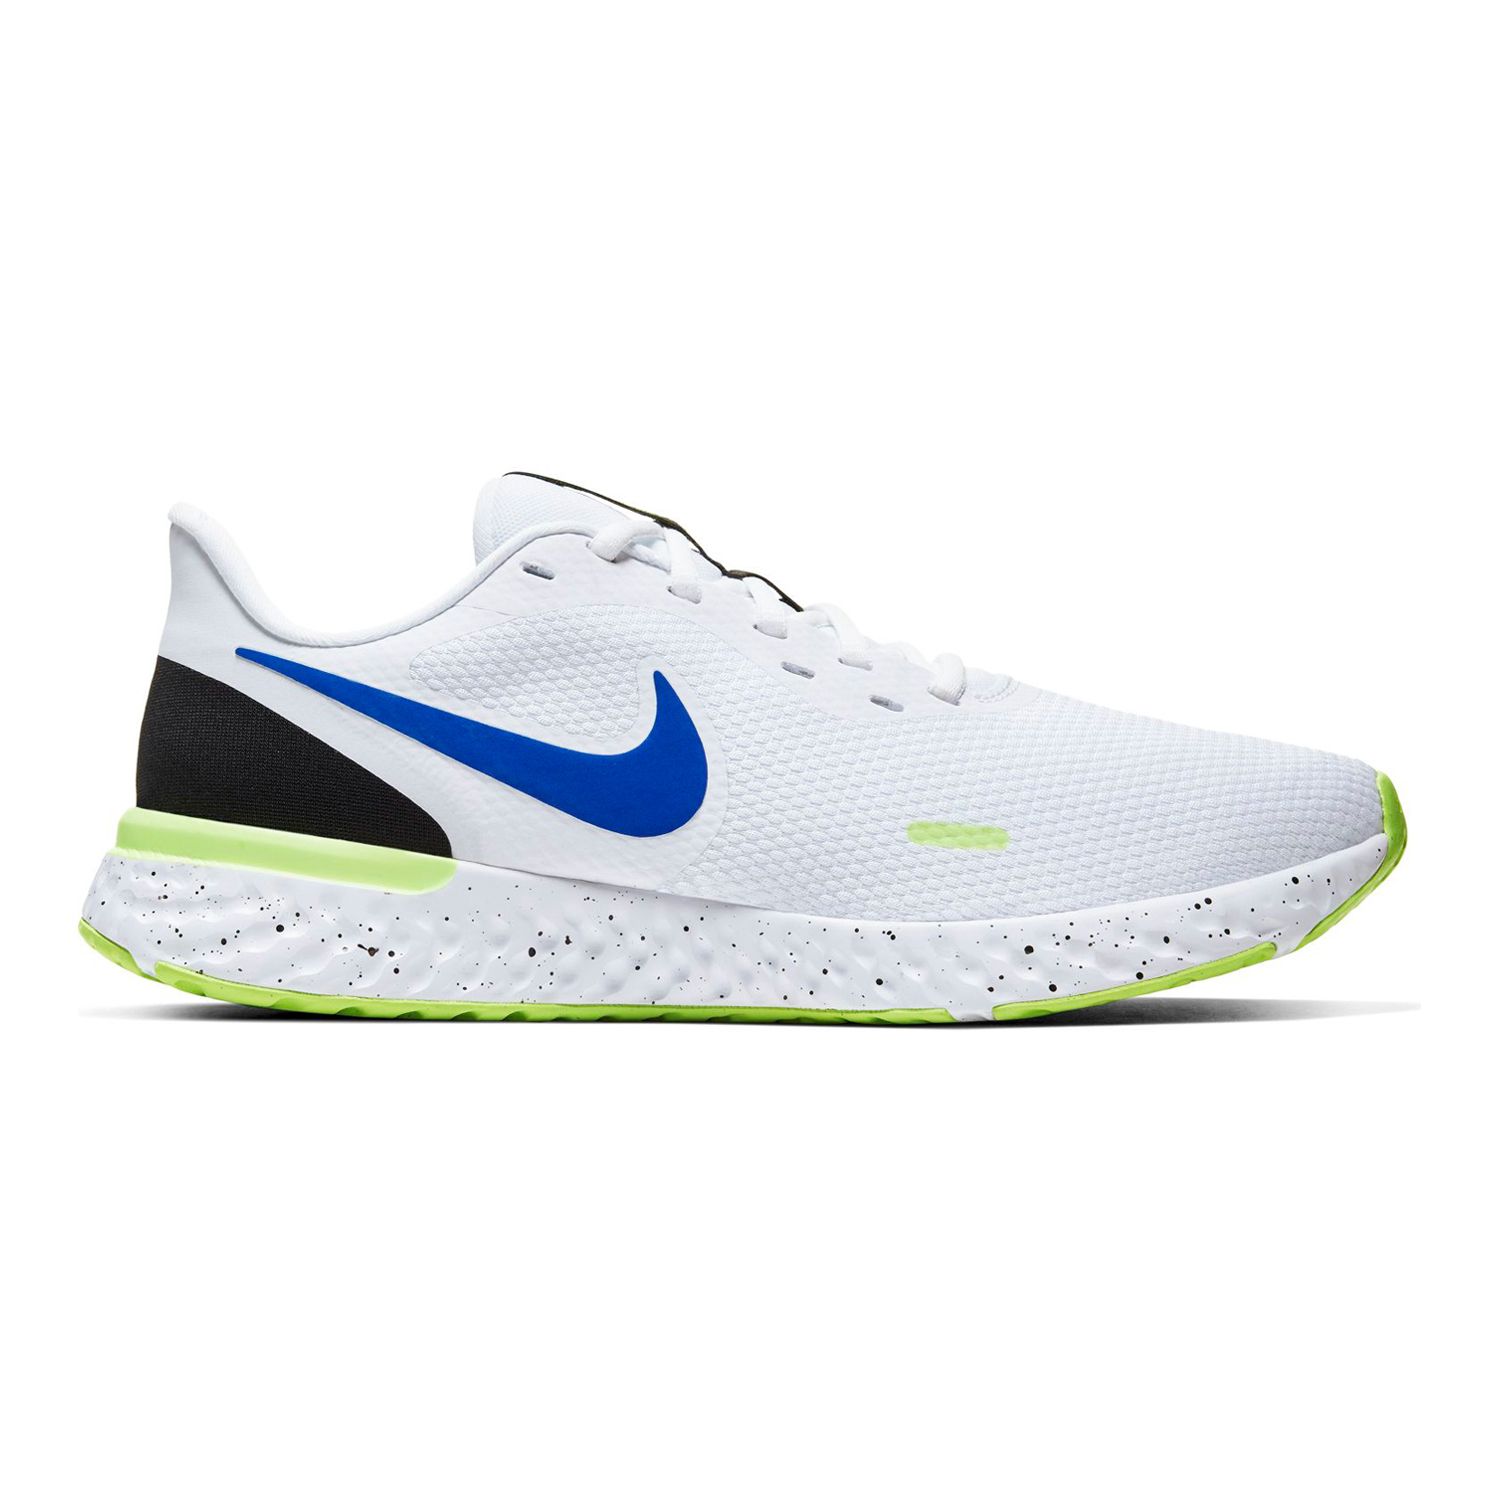 Nike Revolutions 5 Men's Running Shoes